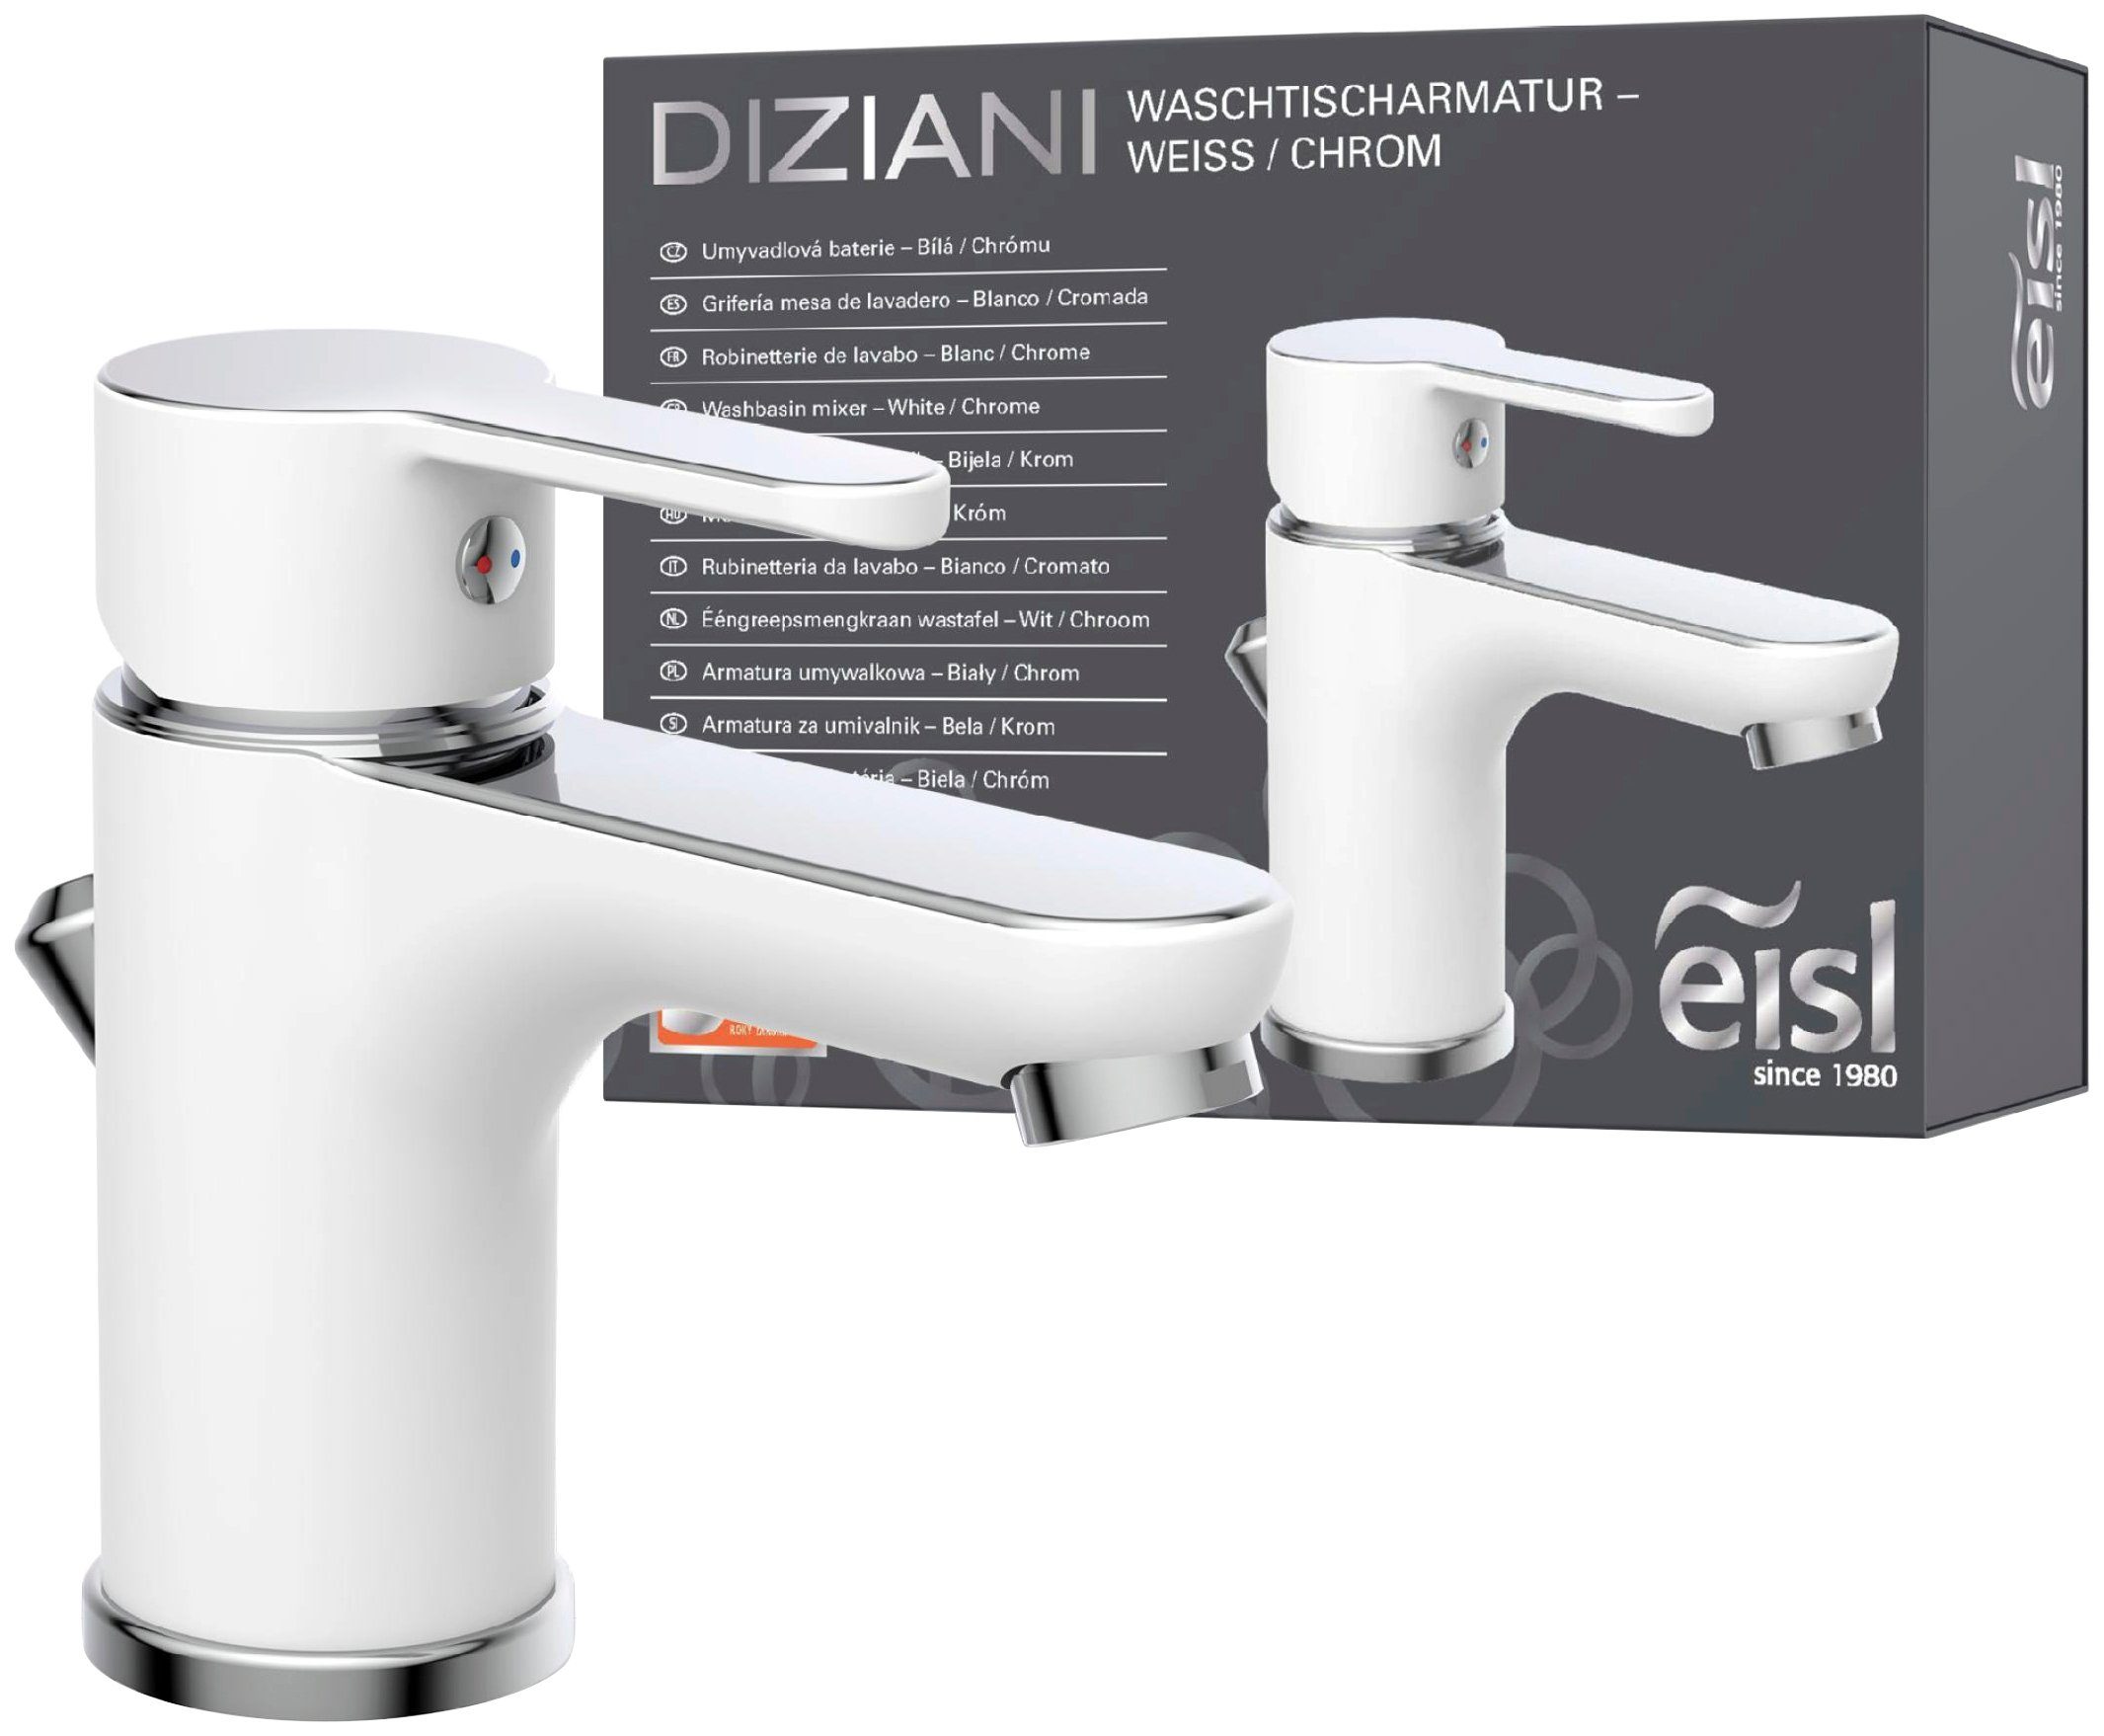 Eisl Waschtischarmatur Diziani mit Mischbatterie Chrom Ablaufgarnitur, weiß, Wasserhahn Zugstange, mit